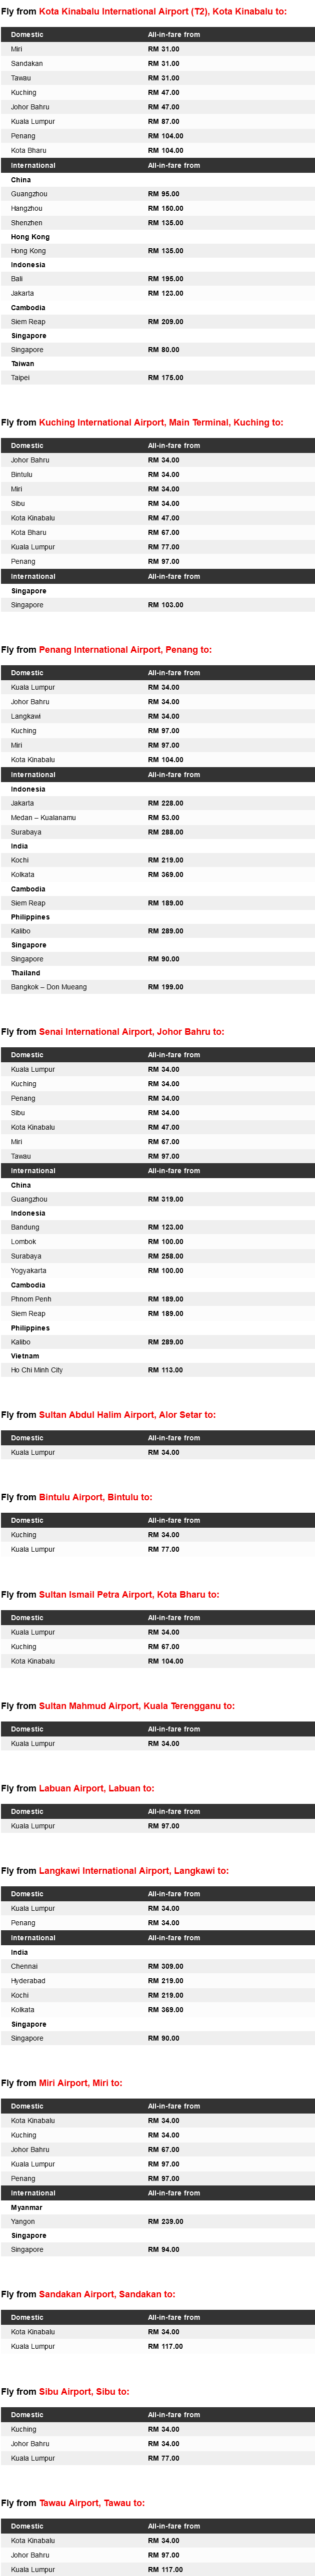 AirAsia Low Fares Promotion 2015 Details